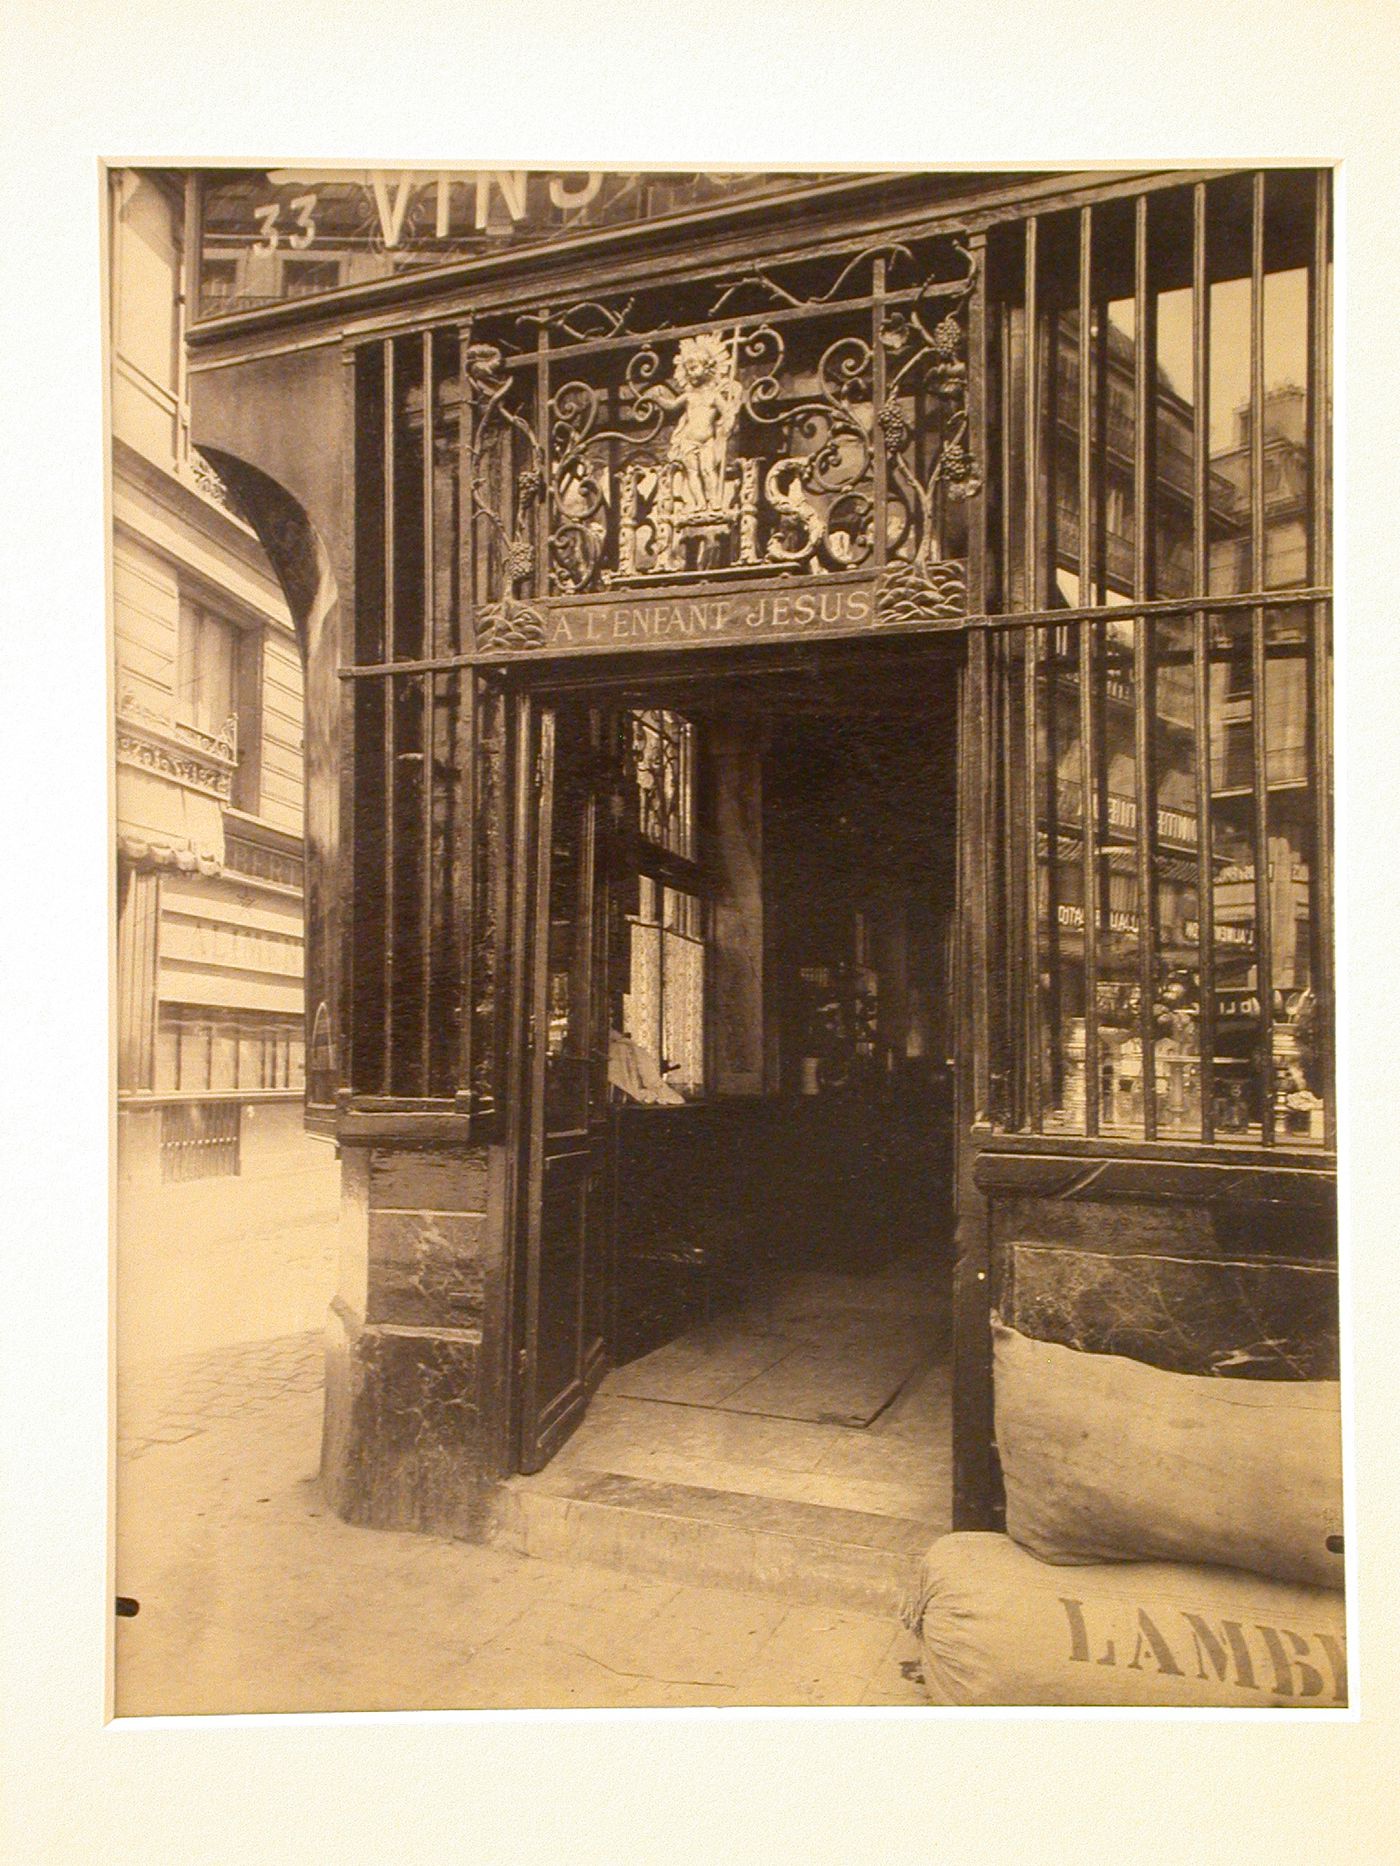 Detail of doorway, "Cabaret de l'enfant Jésus", Paris, France